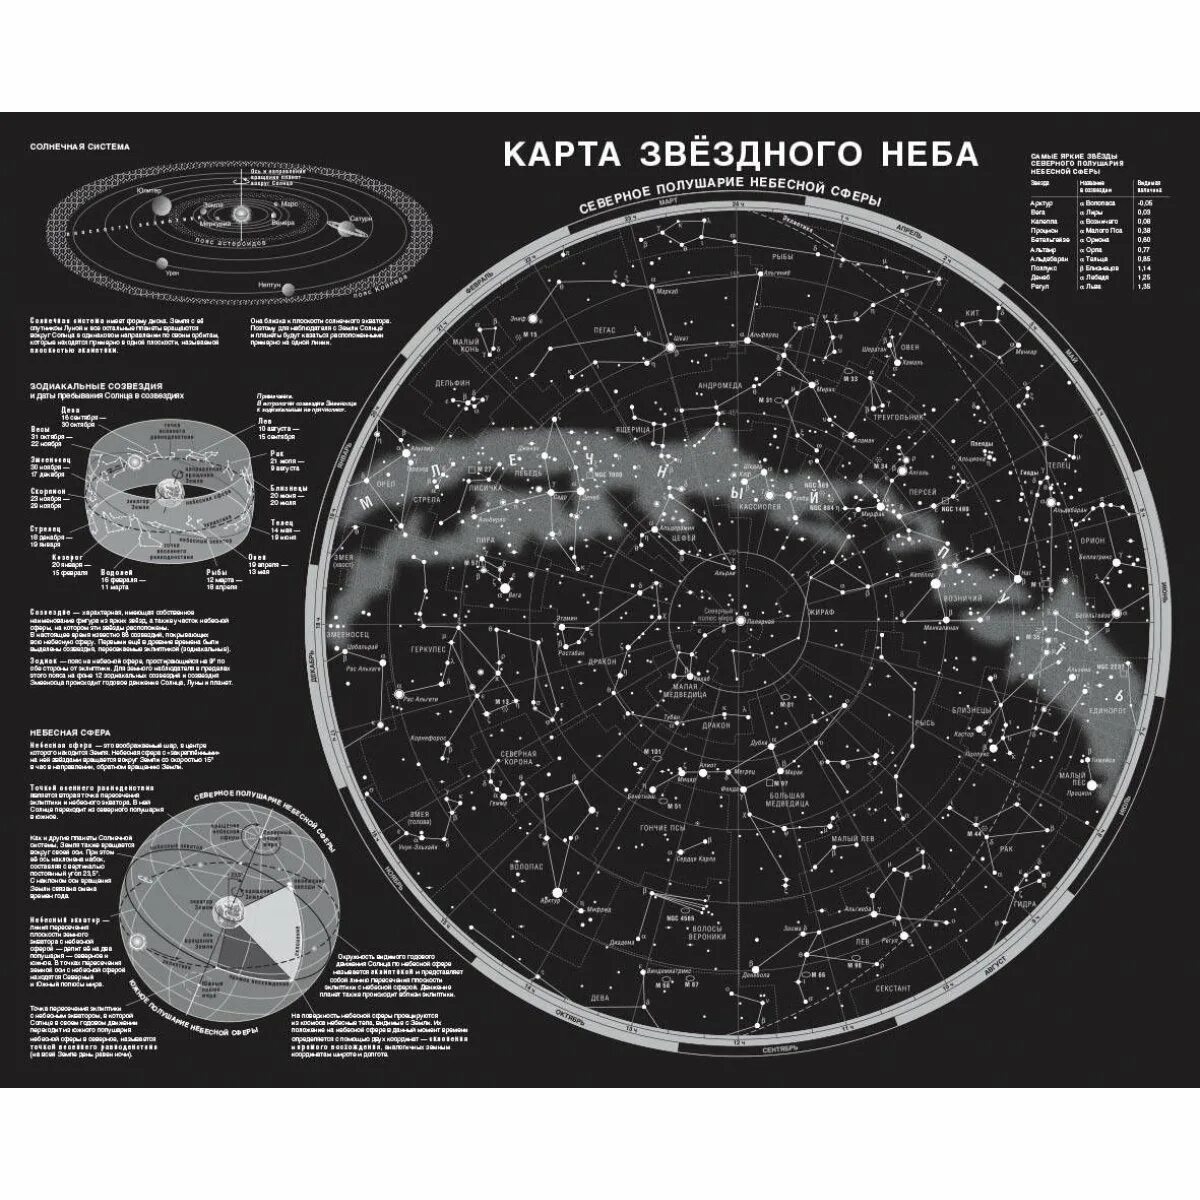 Интерактивные звездные карты. Астрономия созвездия карта звездного неба. Карта звёздного неба Северное полушарие подробная. Атлас звездного неба Северного полушария с созвездиями.